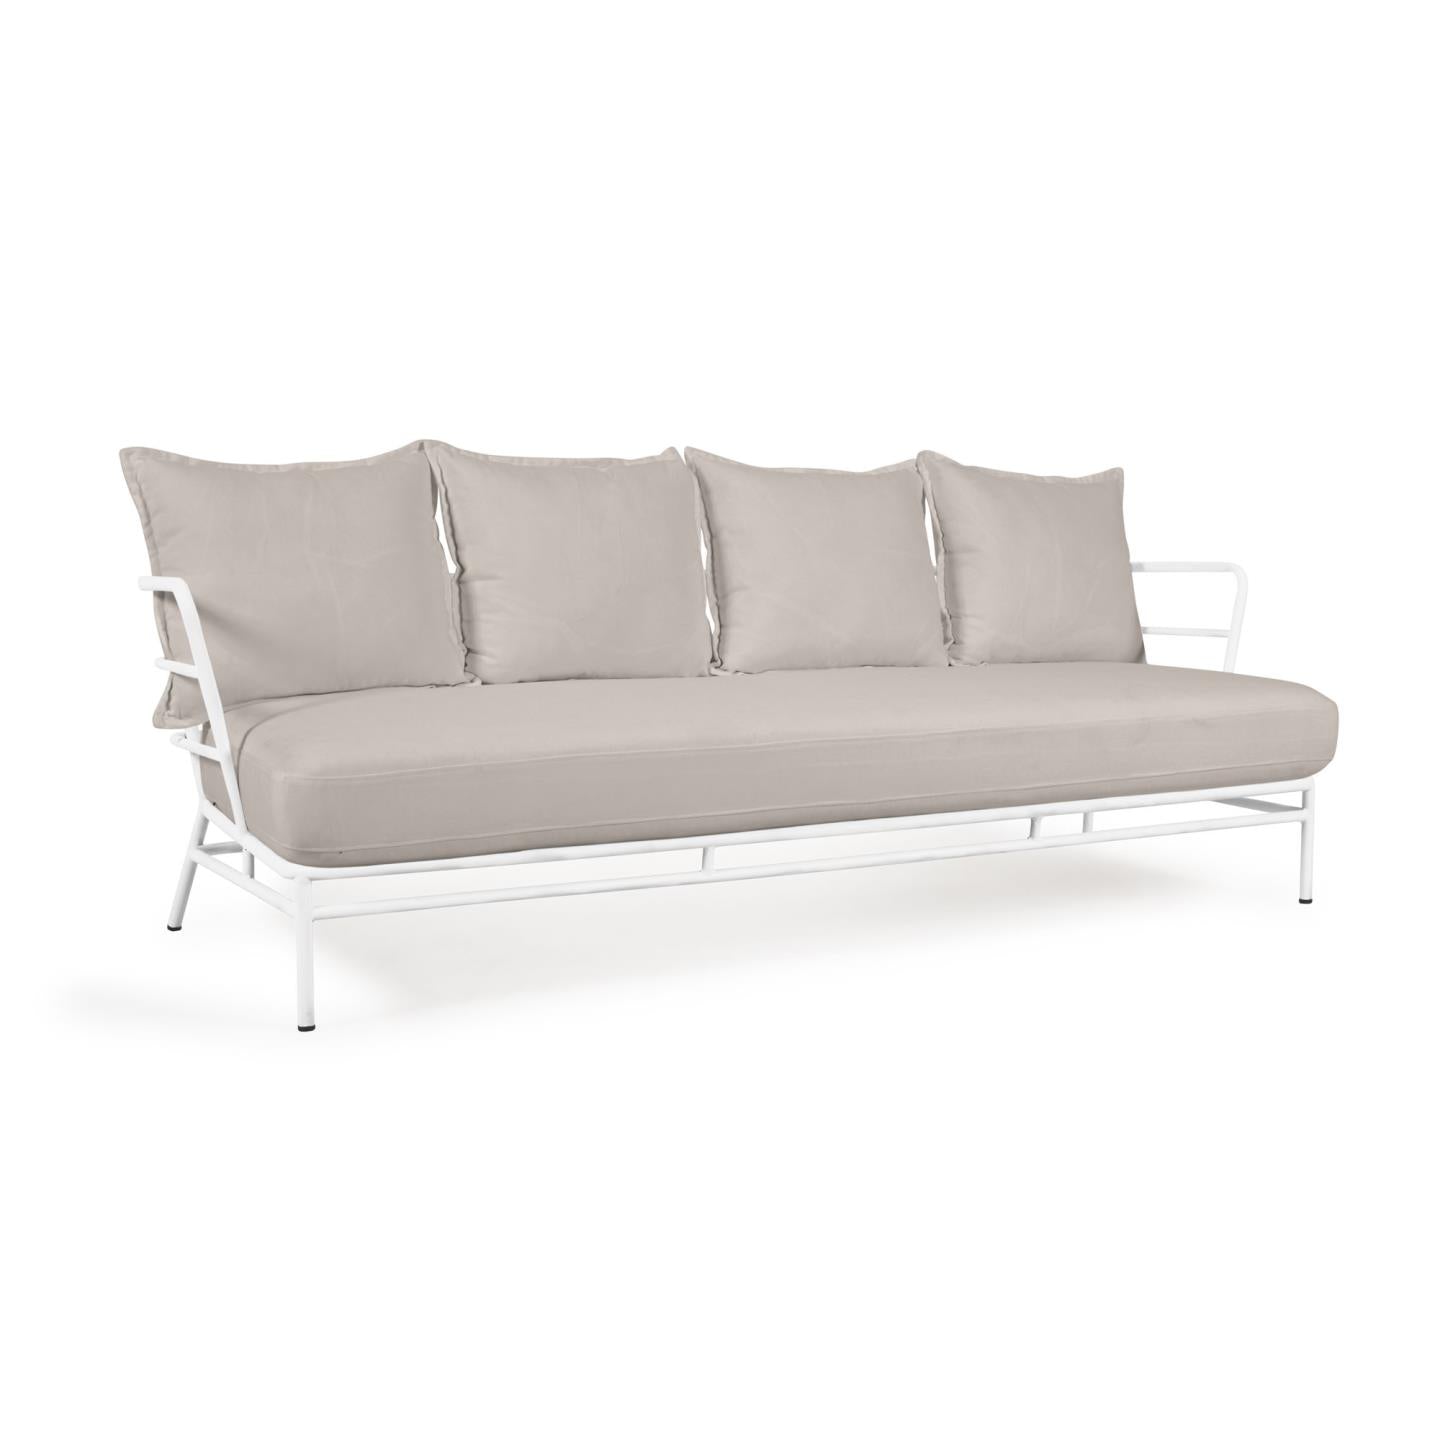 Mareluz 3 személyes kanapé fehér acélból, 197 cm